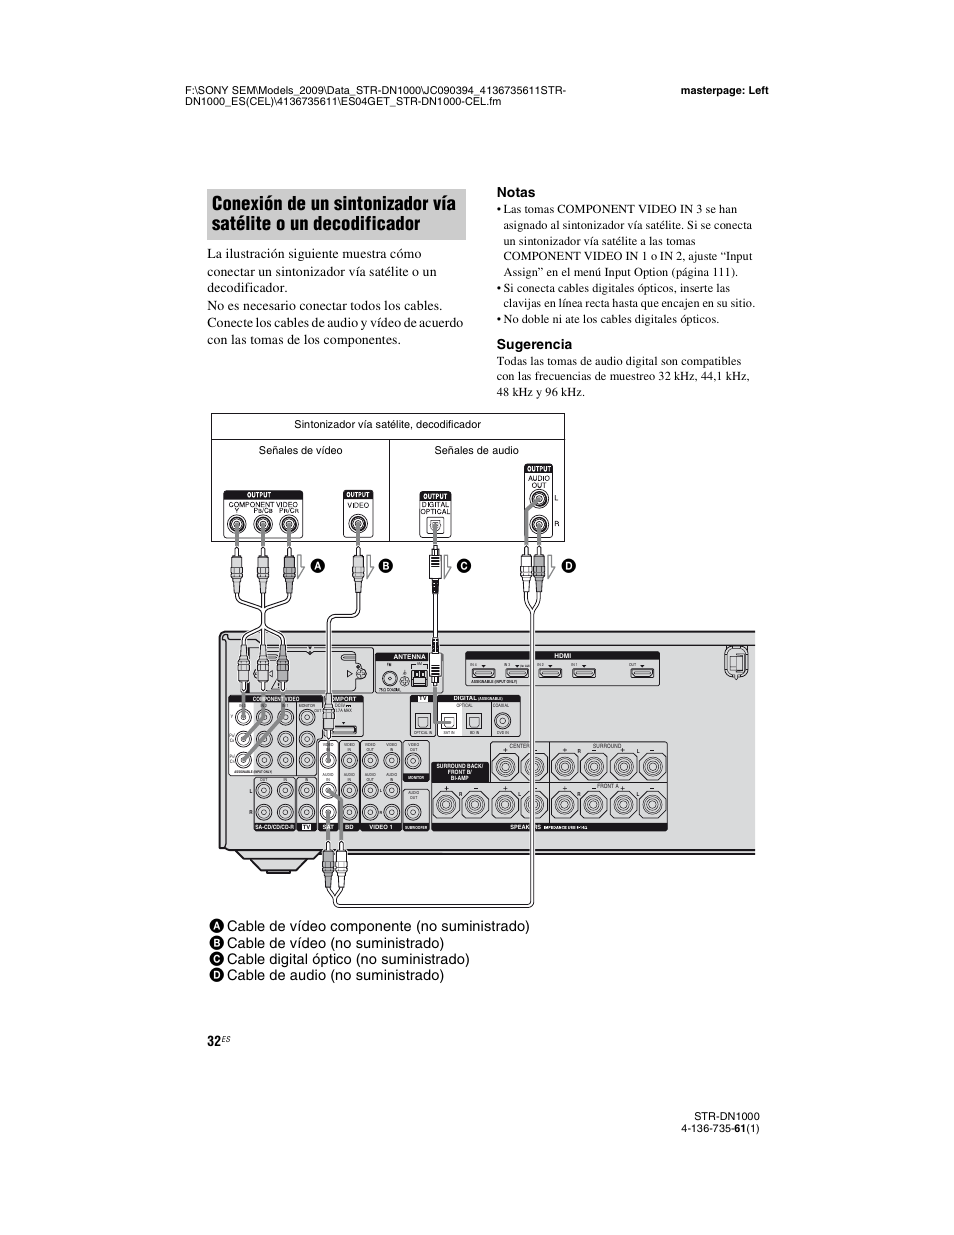 Sugerencia, Señales de vídeo señales de audio, Sintonizador vía satélite, decodificador | Sony STR-DN1000 Manual del usuario | Página 32 / 144